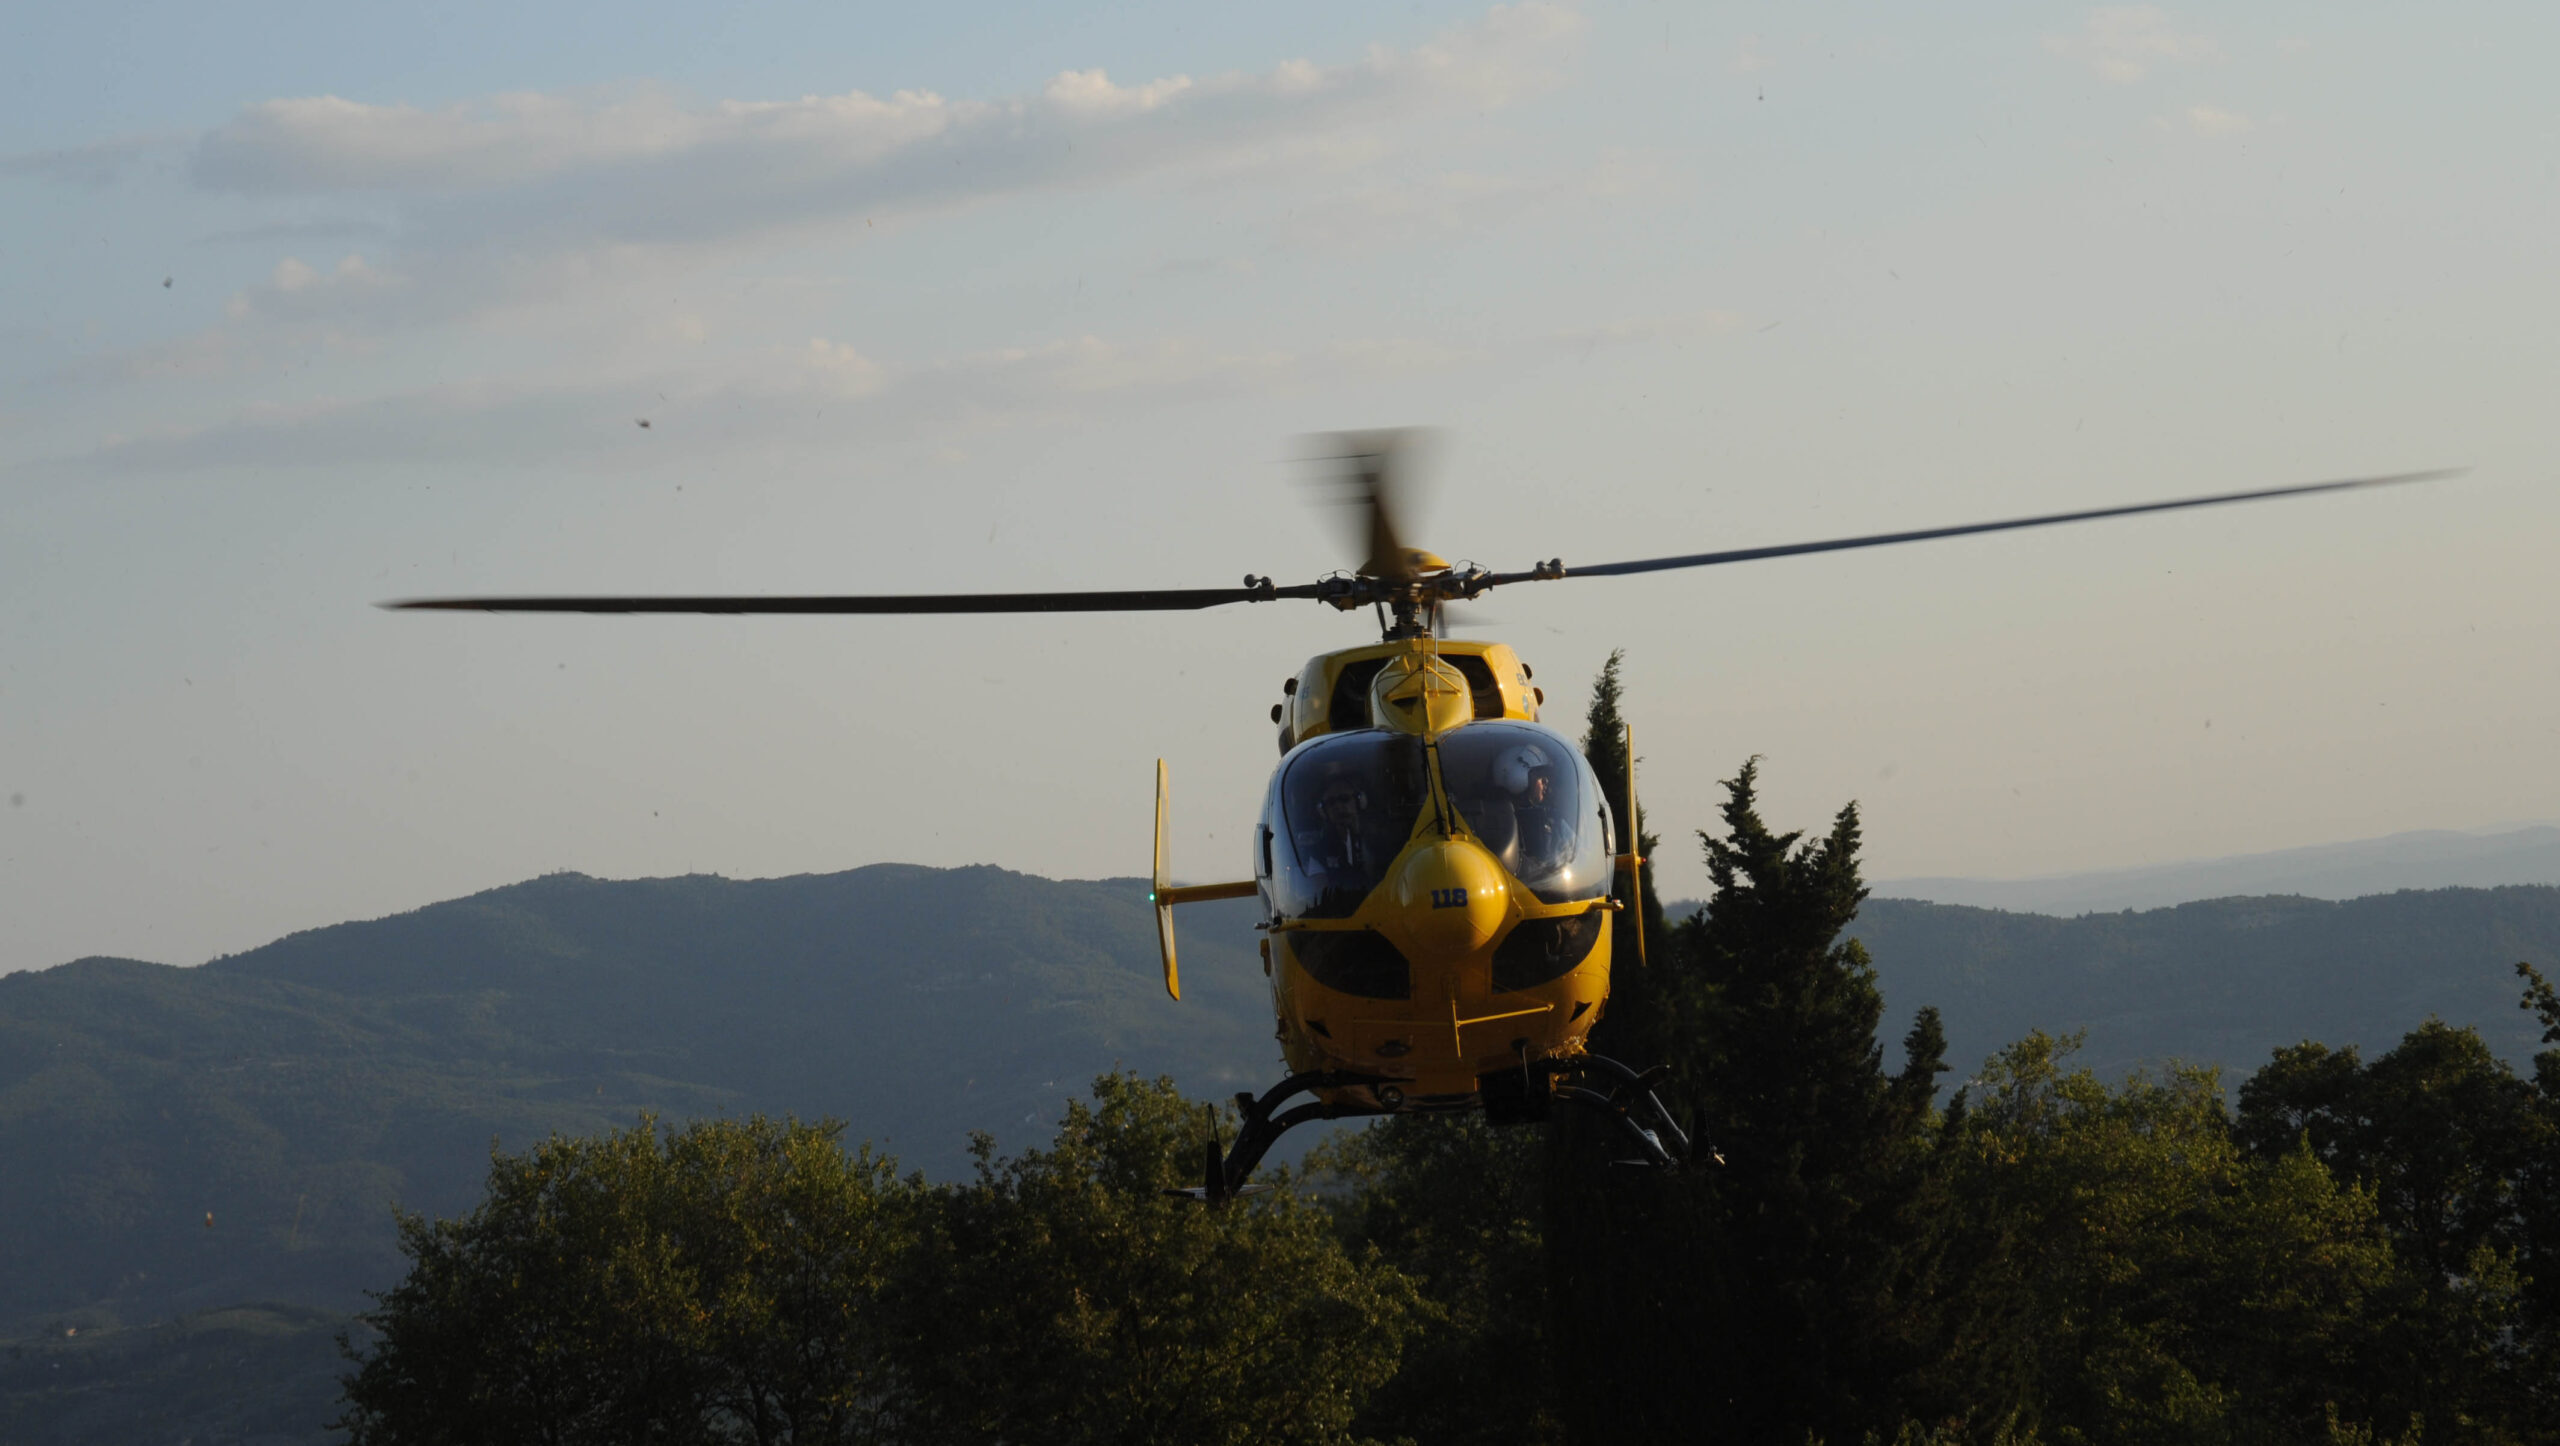 Incidente nella pista da cross a Terranuova Bracciolini: motociclista trasportato in ospedale